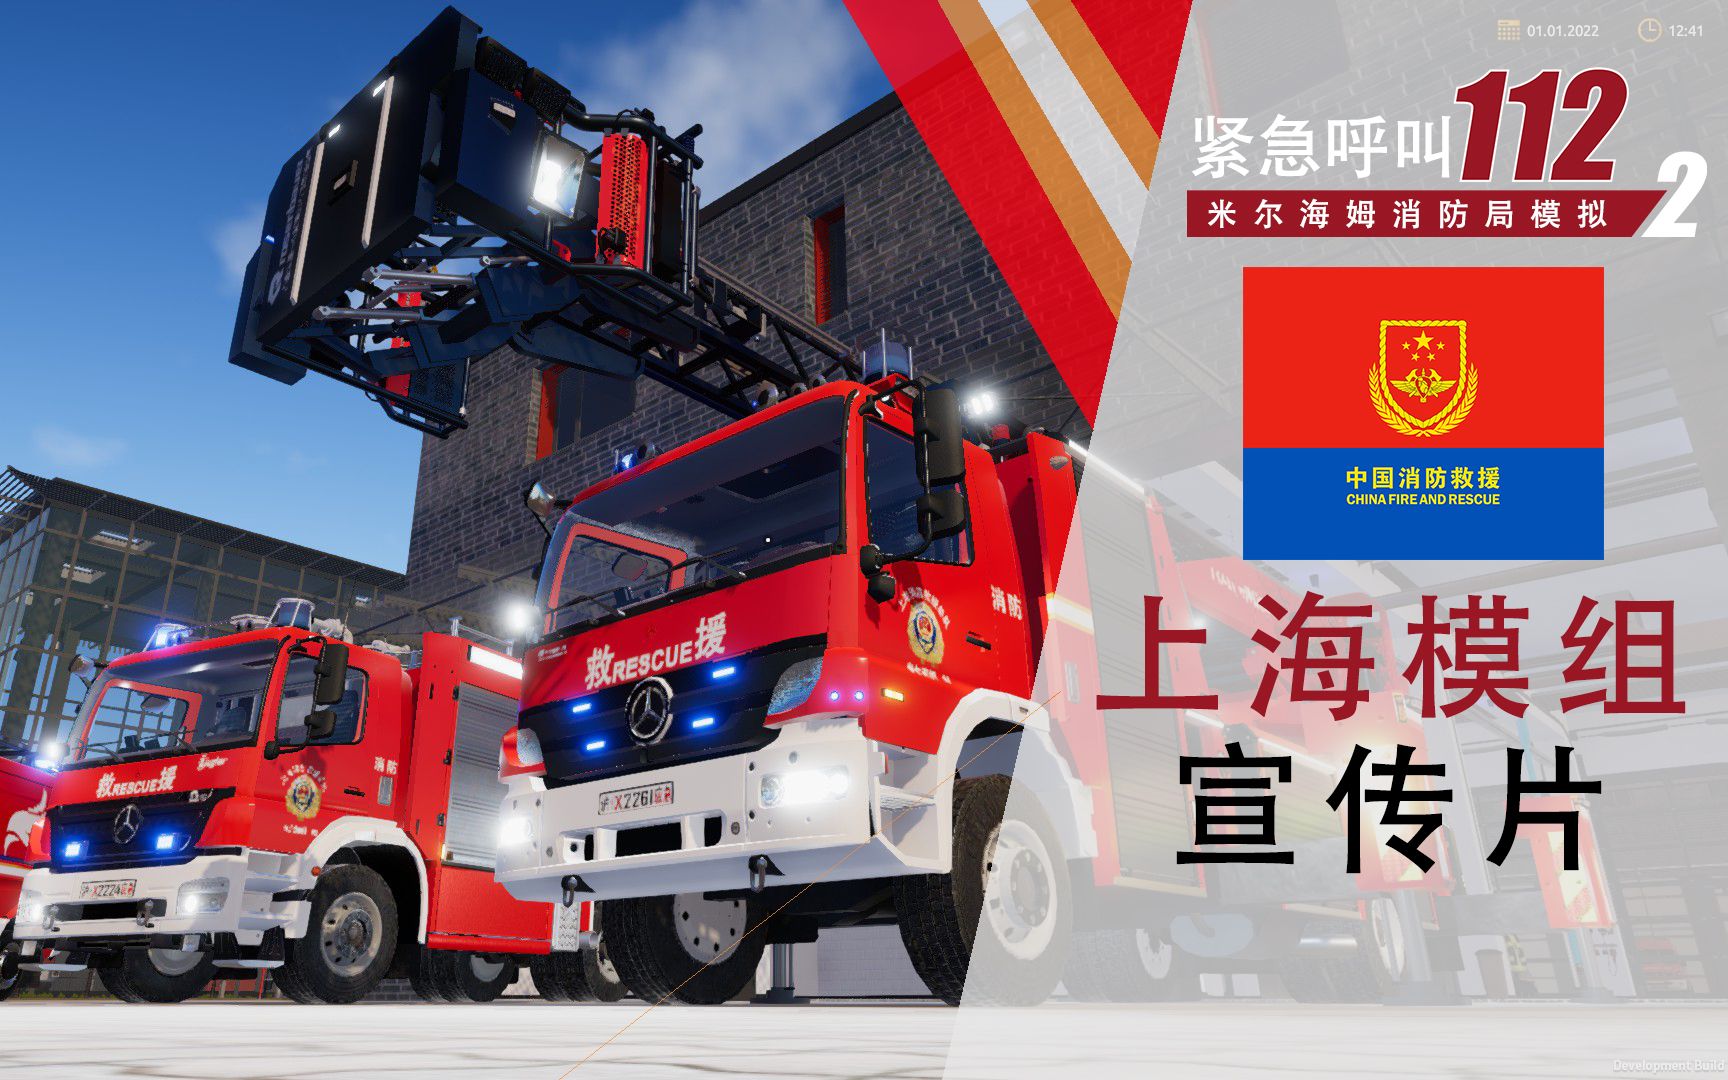 【紧急呼叫112二代】上海模组正式发布 | 宣传片